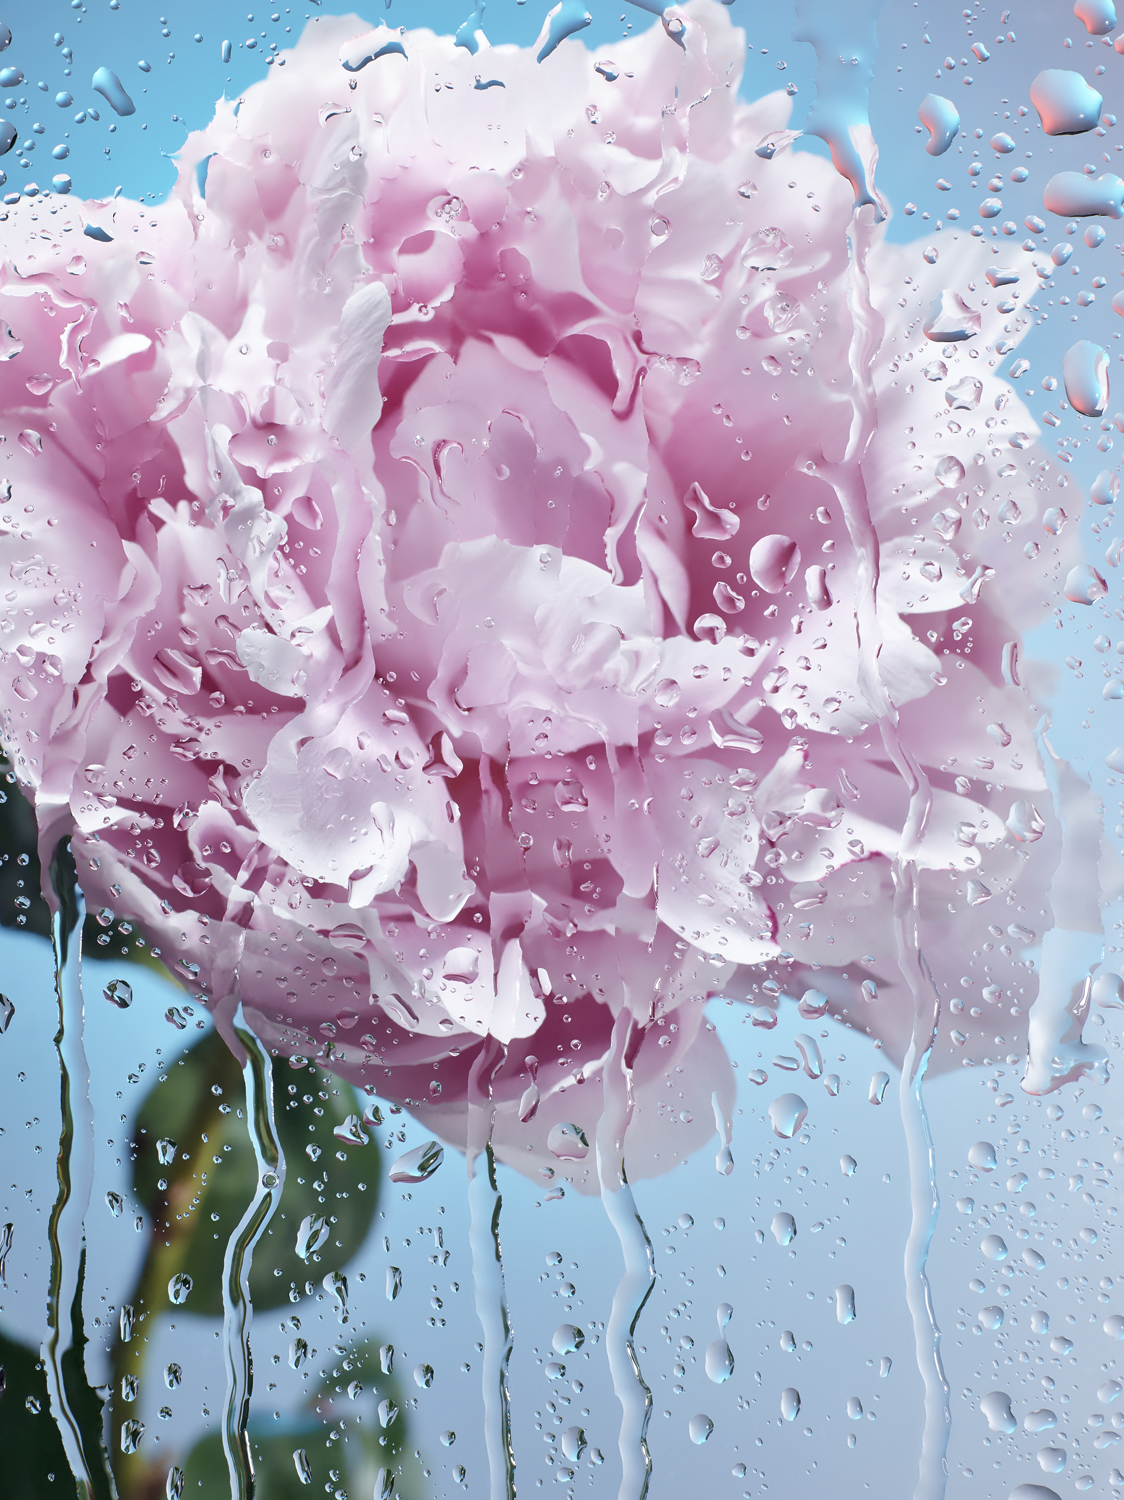 peonies rain Flowers blue pink water drops